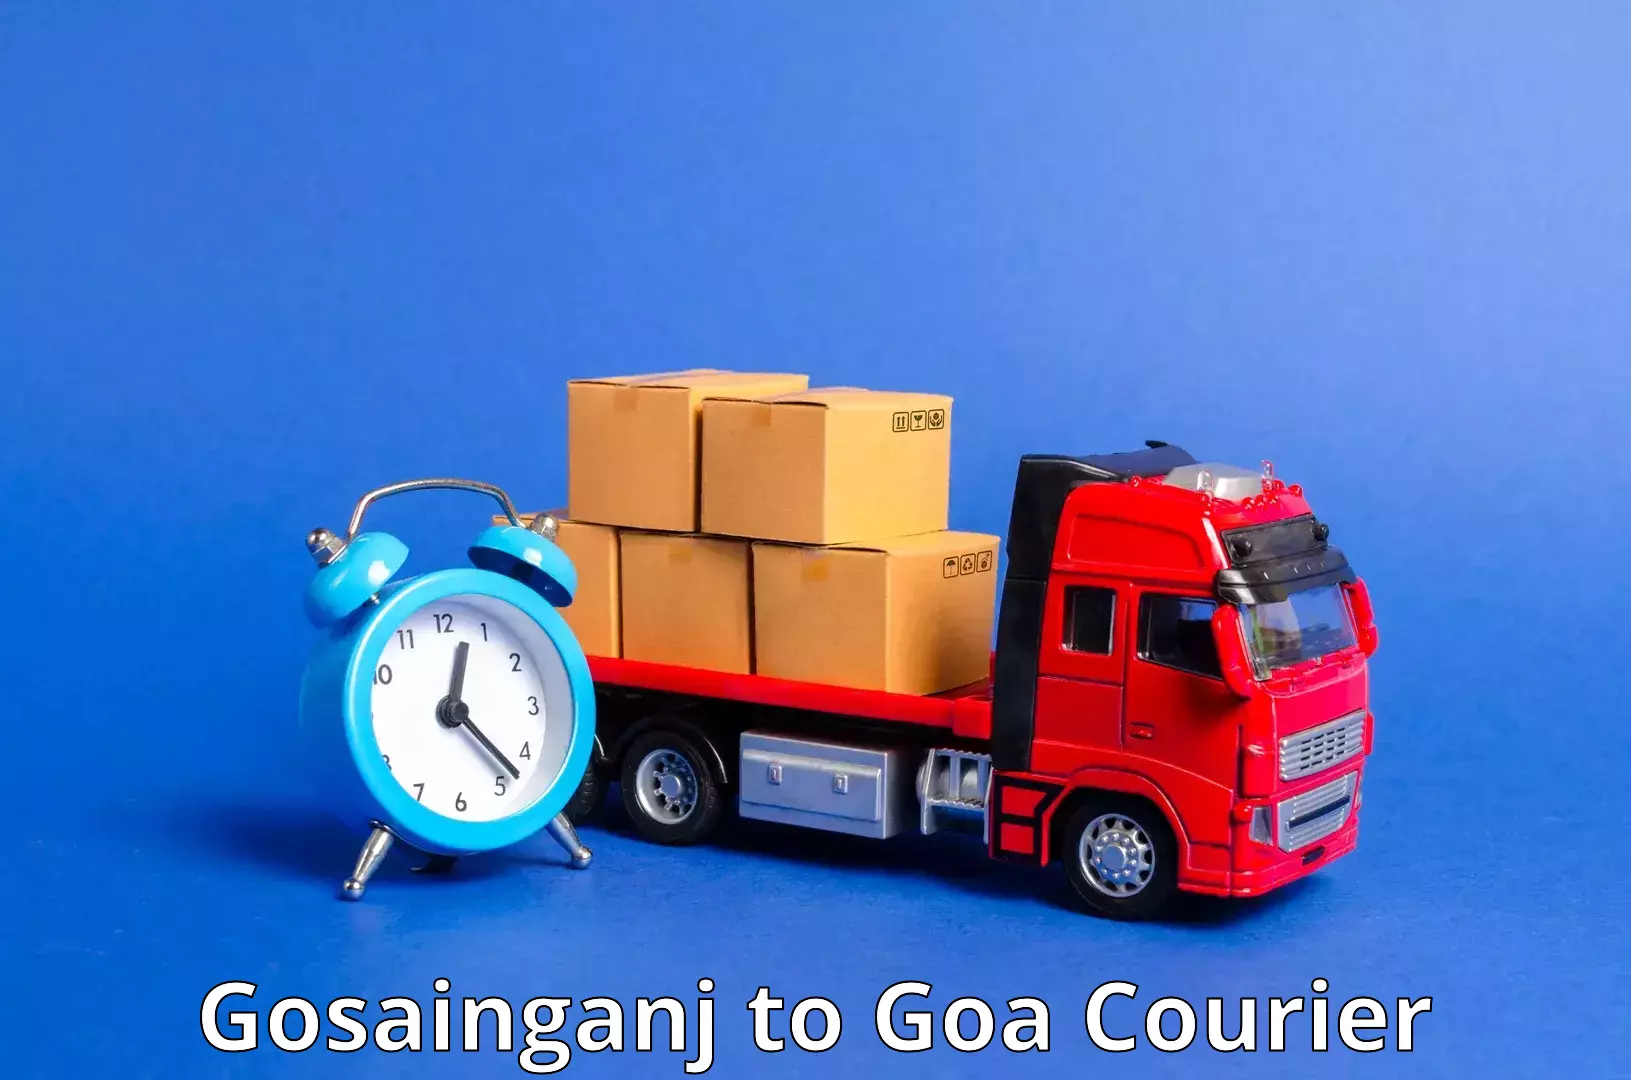 Specialized shipment handling Gosainganj to Goa University